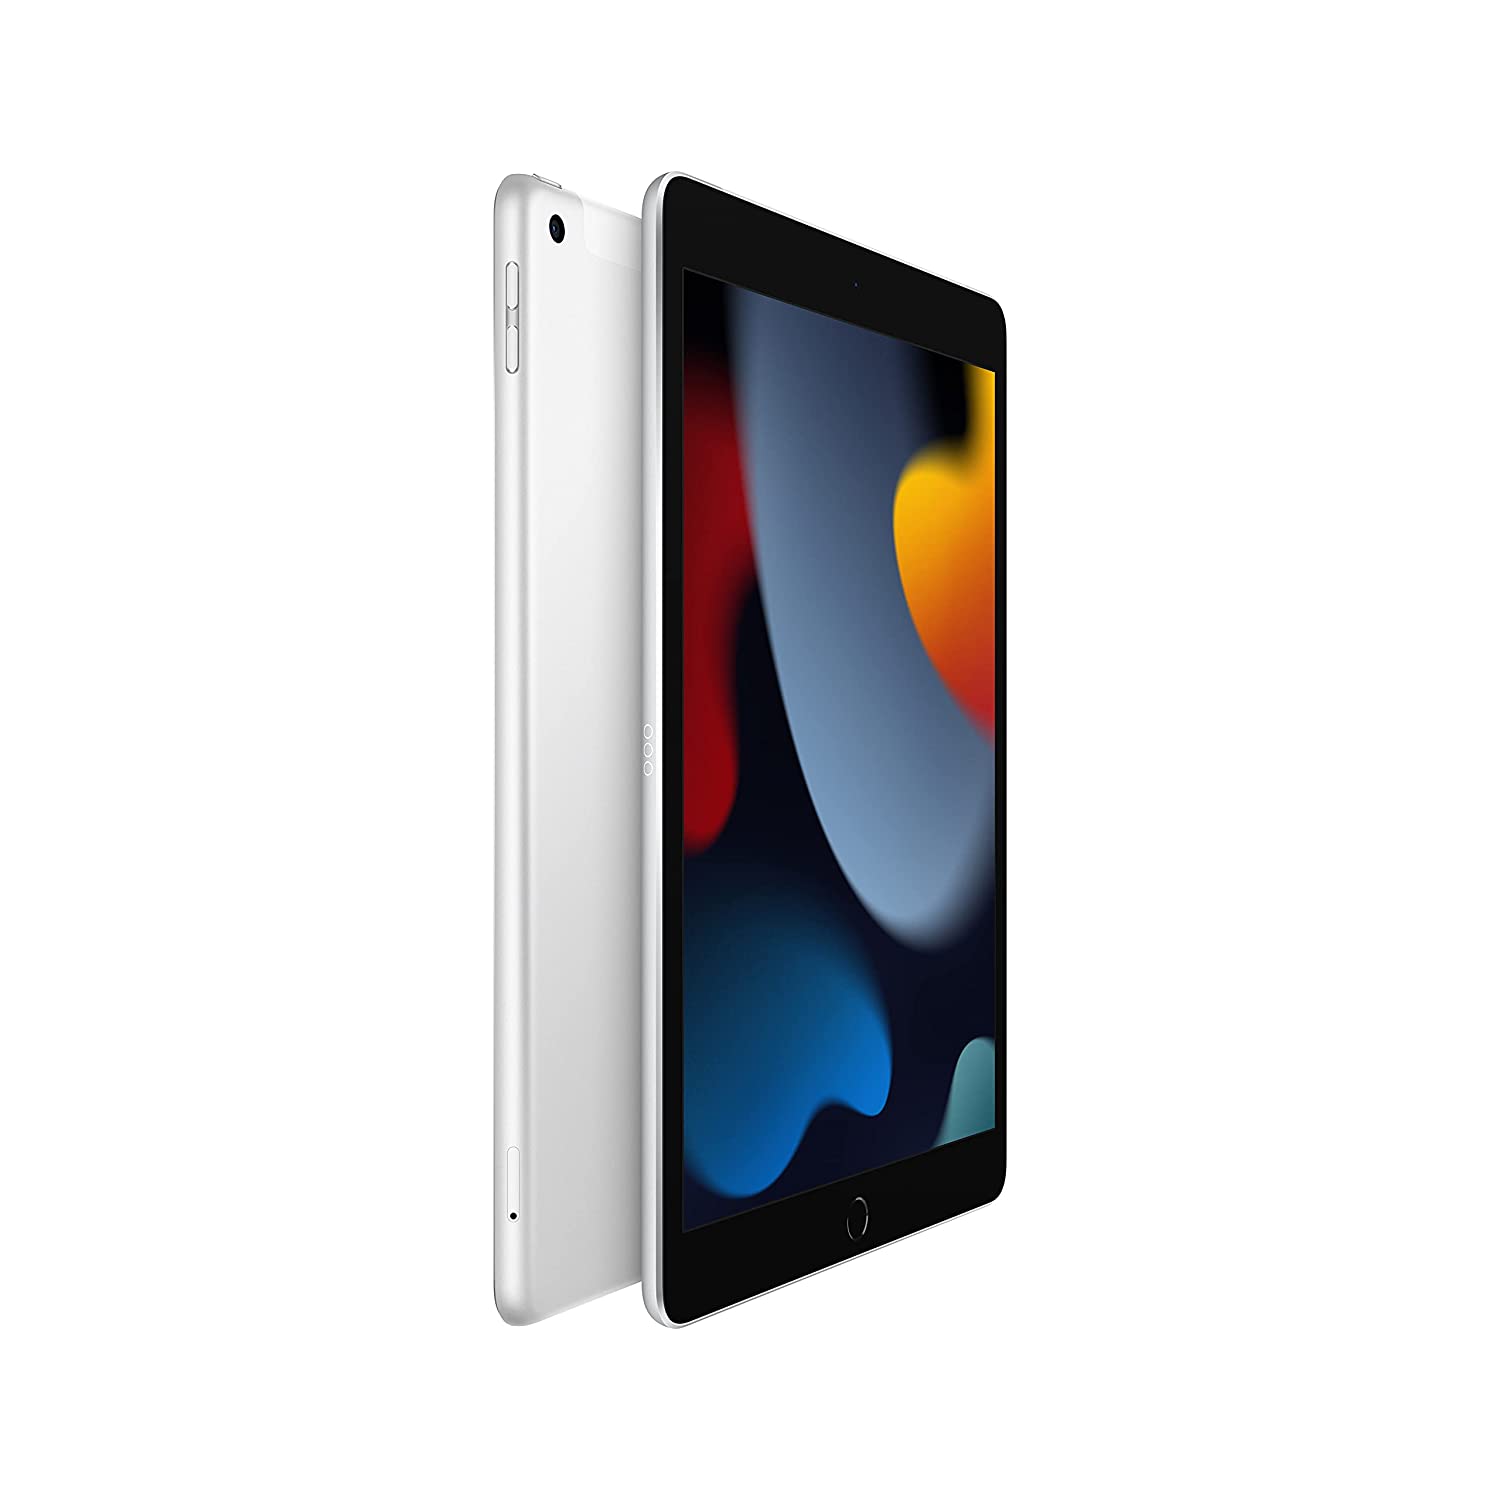 Apple iPad 9th Gen (MK493HN) Silver, 25.91 cm (10.2 inch) Wi-Fi + Cellular Tablet, 64 GB, iOS 15